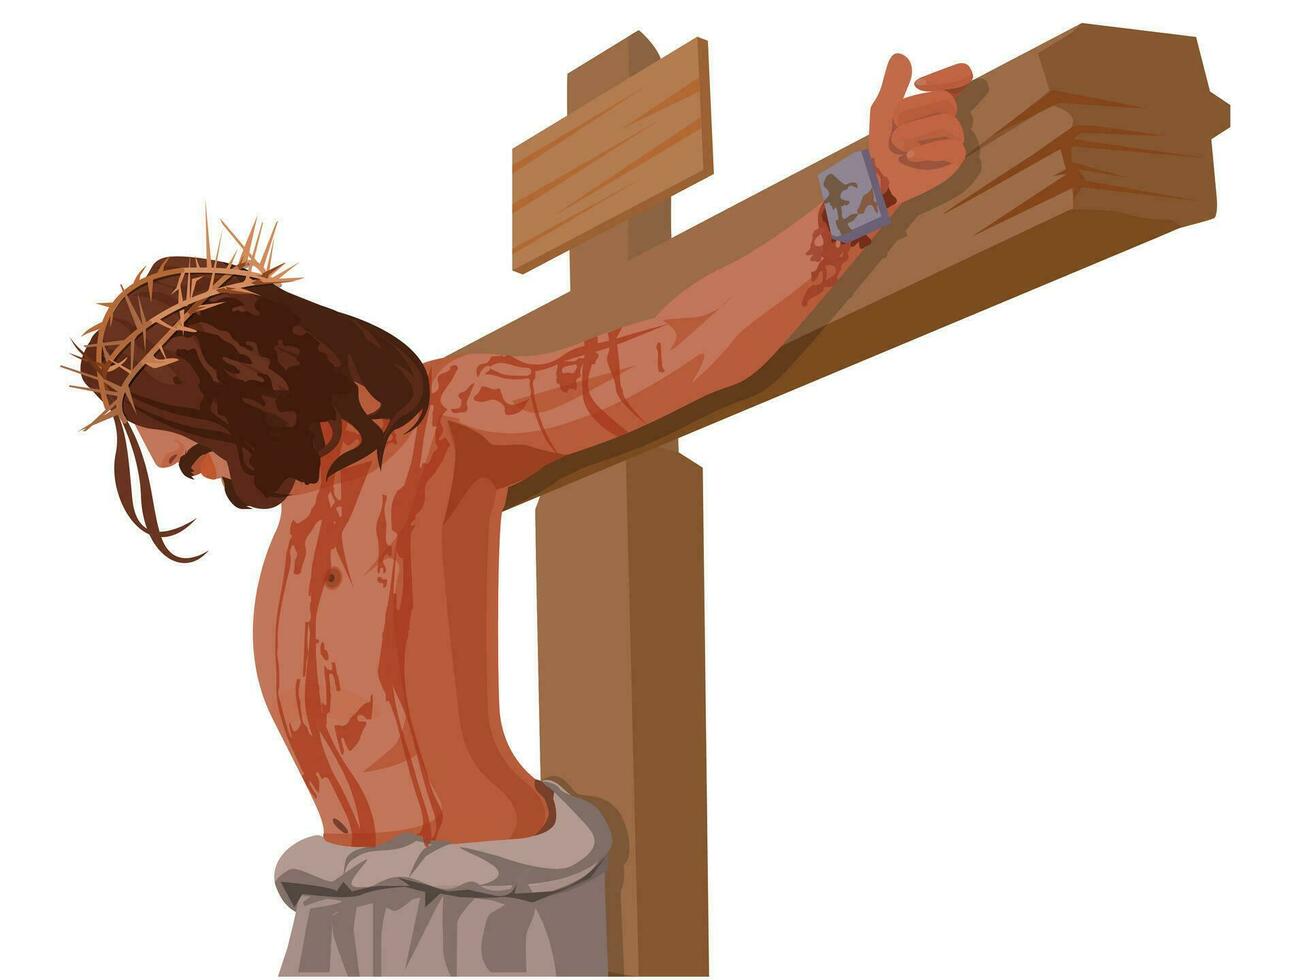 uma piedosos cruzar, Boa Sexta-feira a cristão cruzar, e a piedosos pequenino com ilustrações sobre Jesus Cristo. vetor